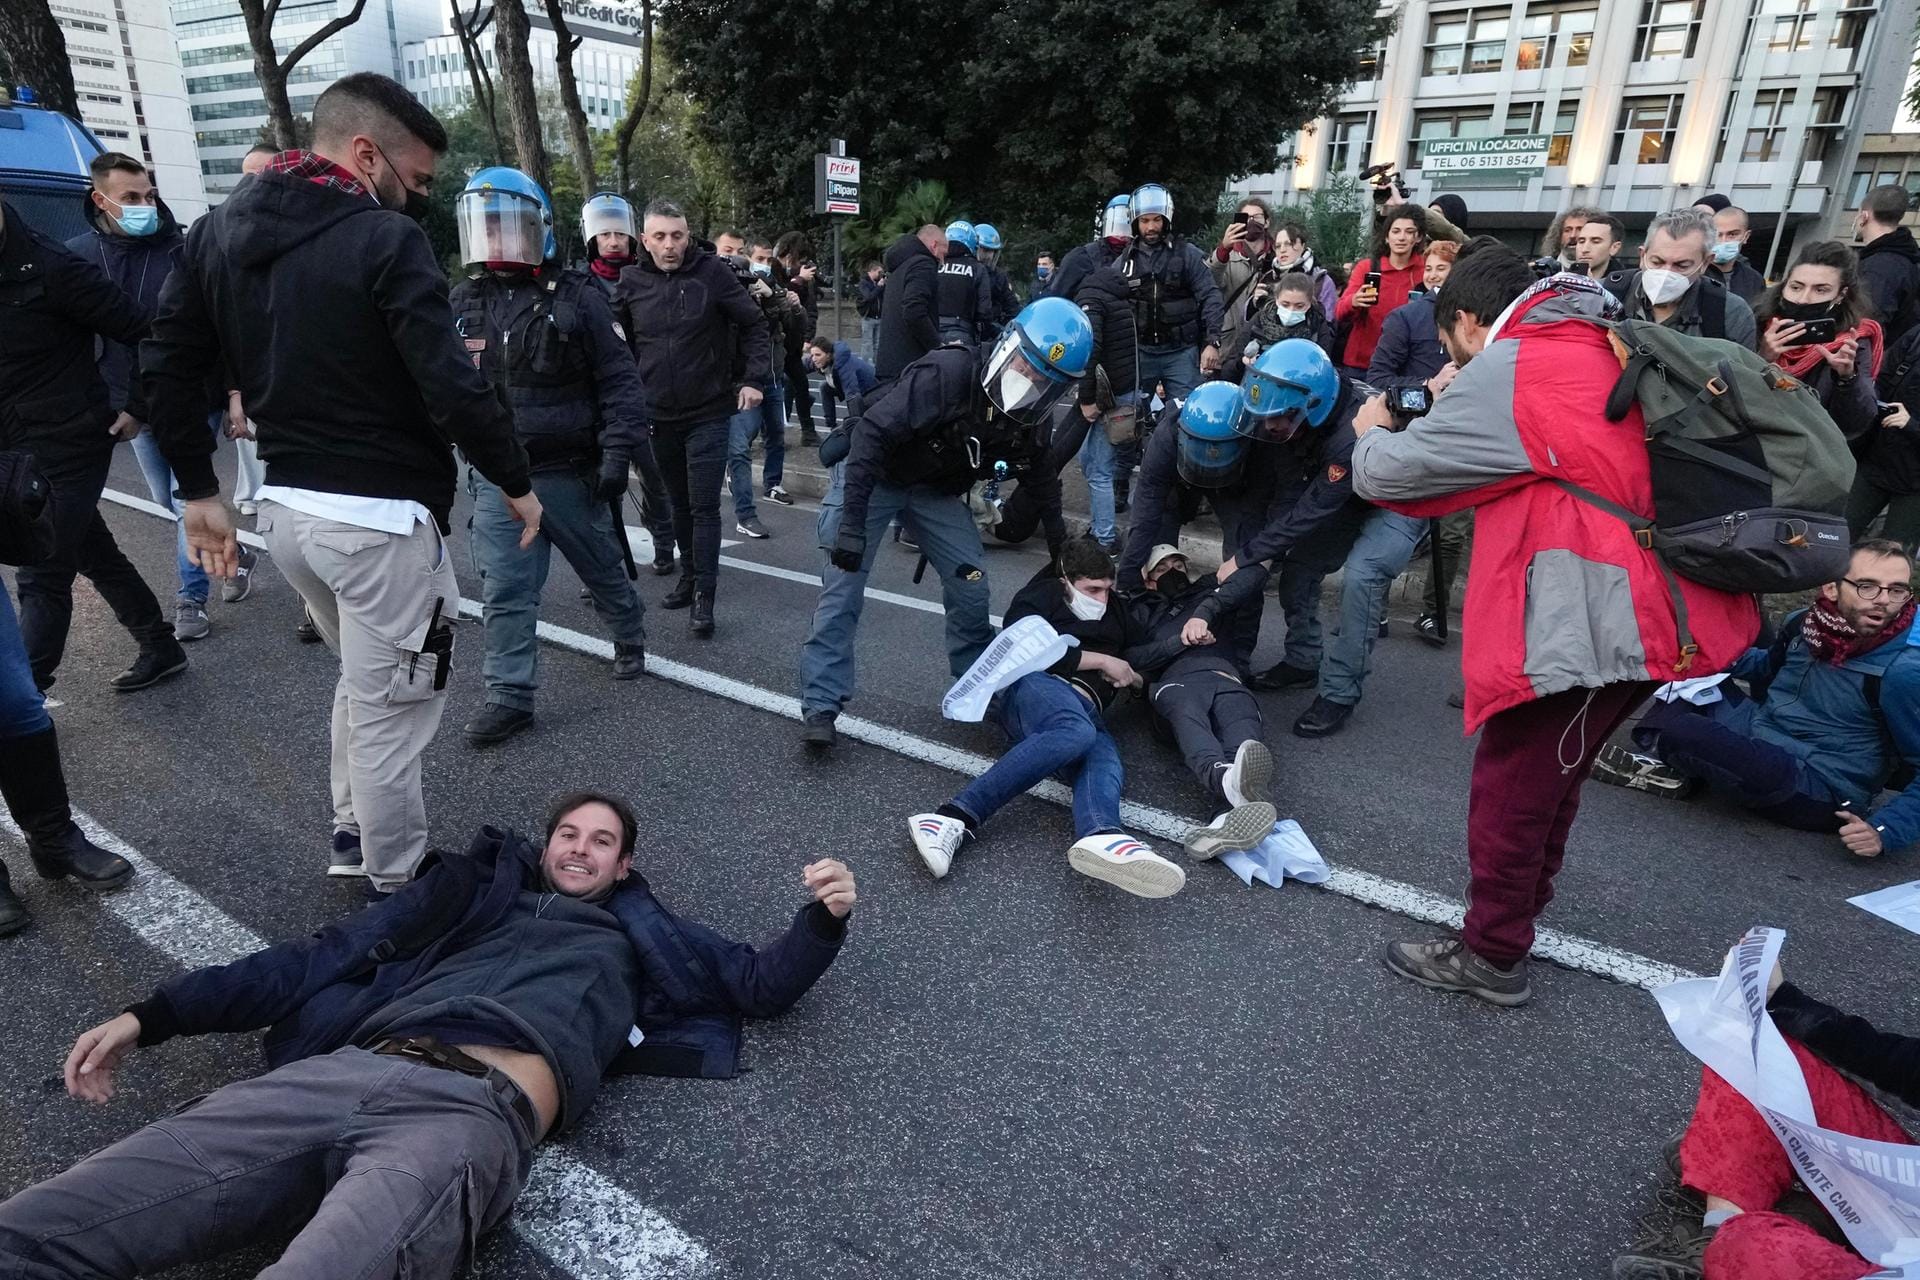 Italienische Polizei im Einsatz: In Rom haben Klimaaktivisten versucht, eine der Hauptstraßen zu blockieren, die zum Kongresszentrum La Nuvola führt.